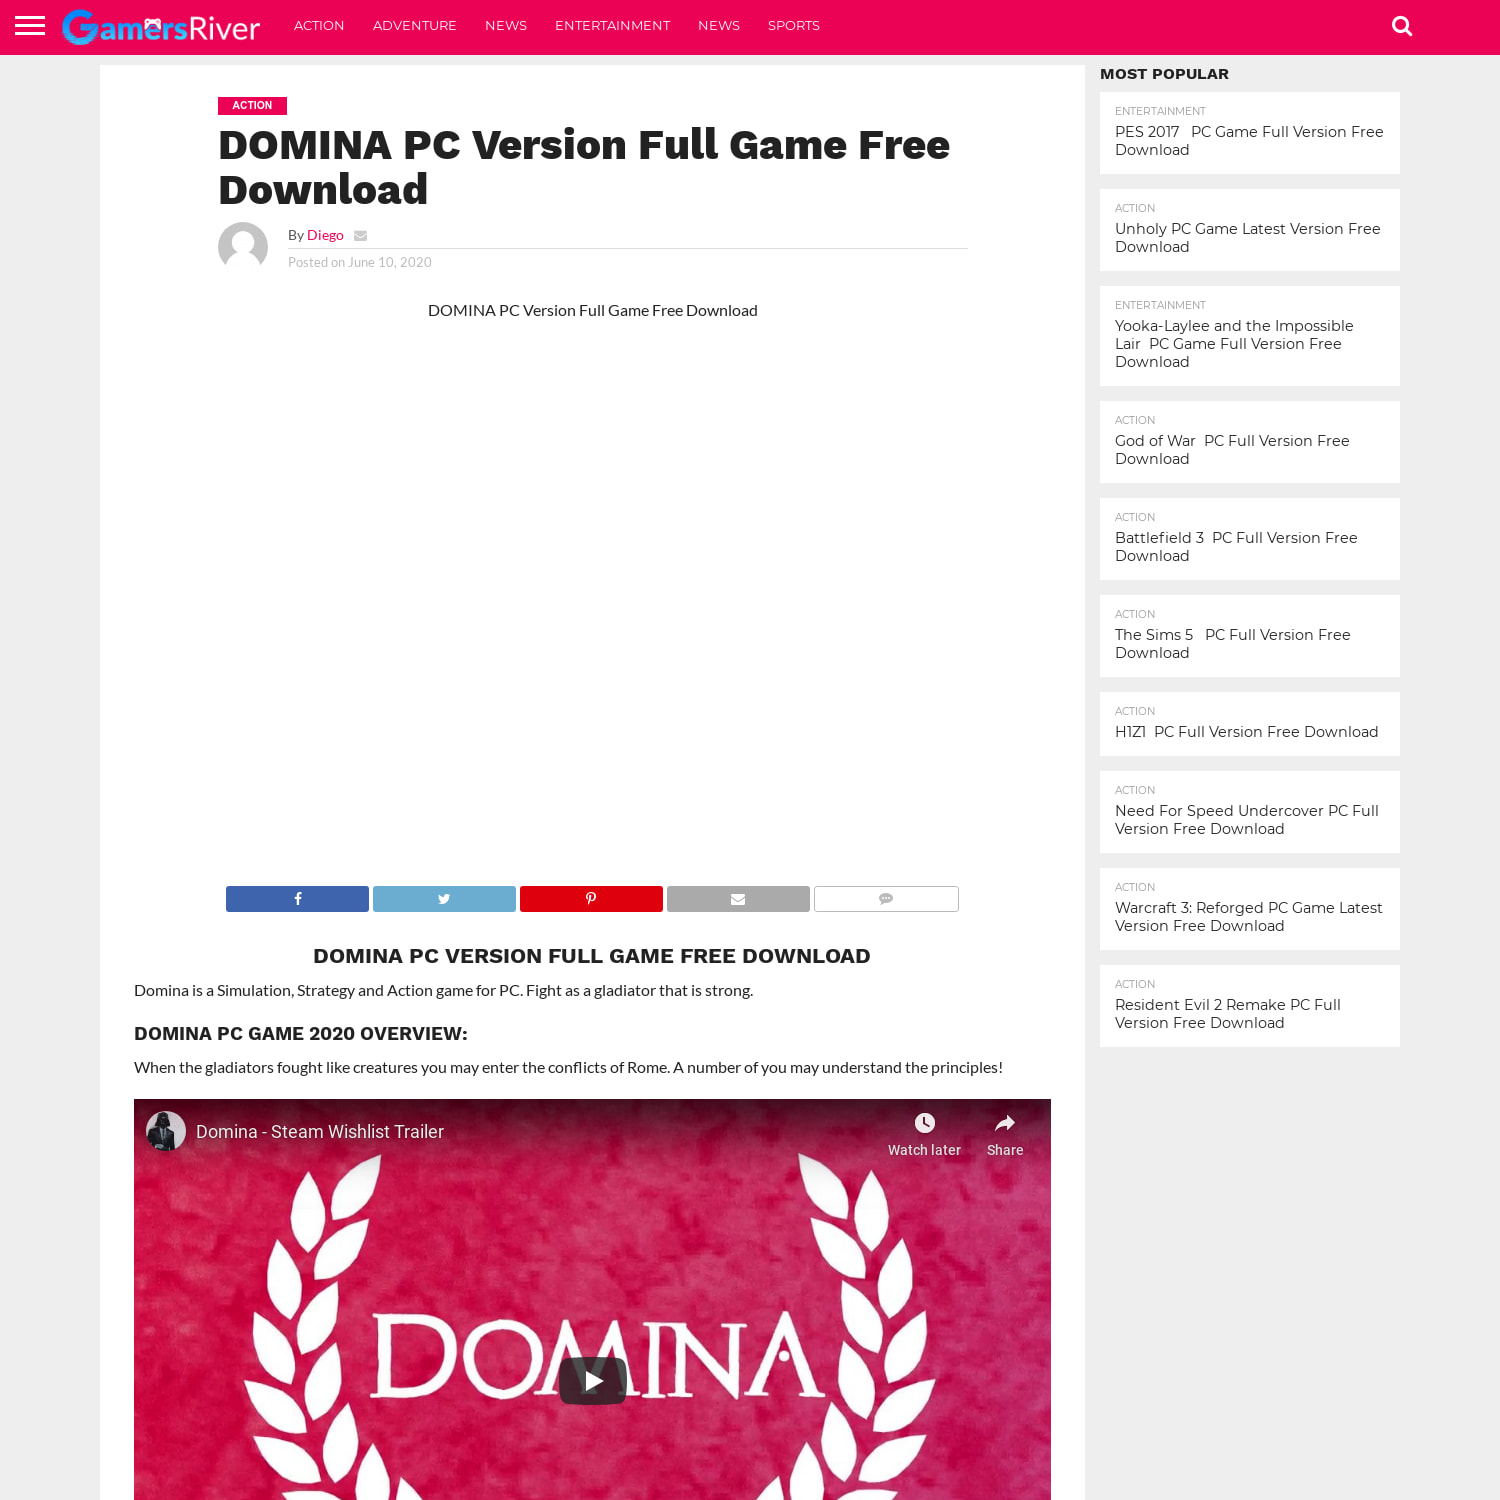 DOMINA PC Version Full Game Free Download